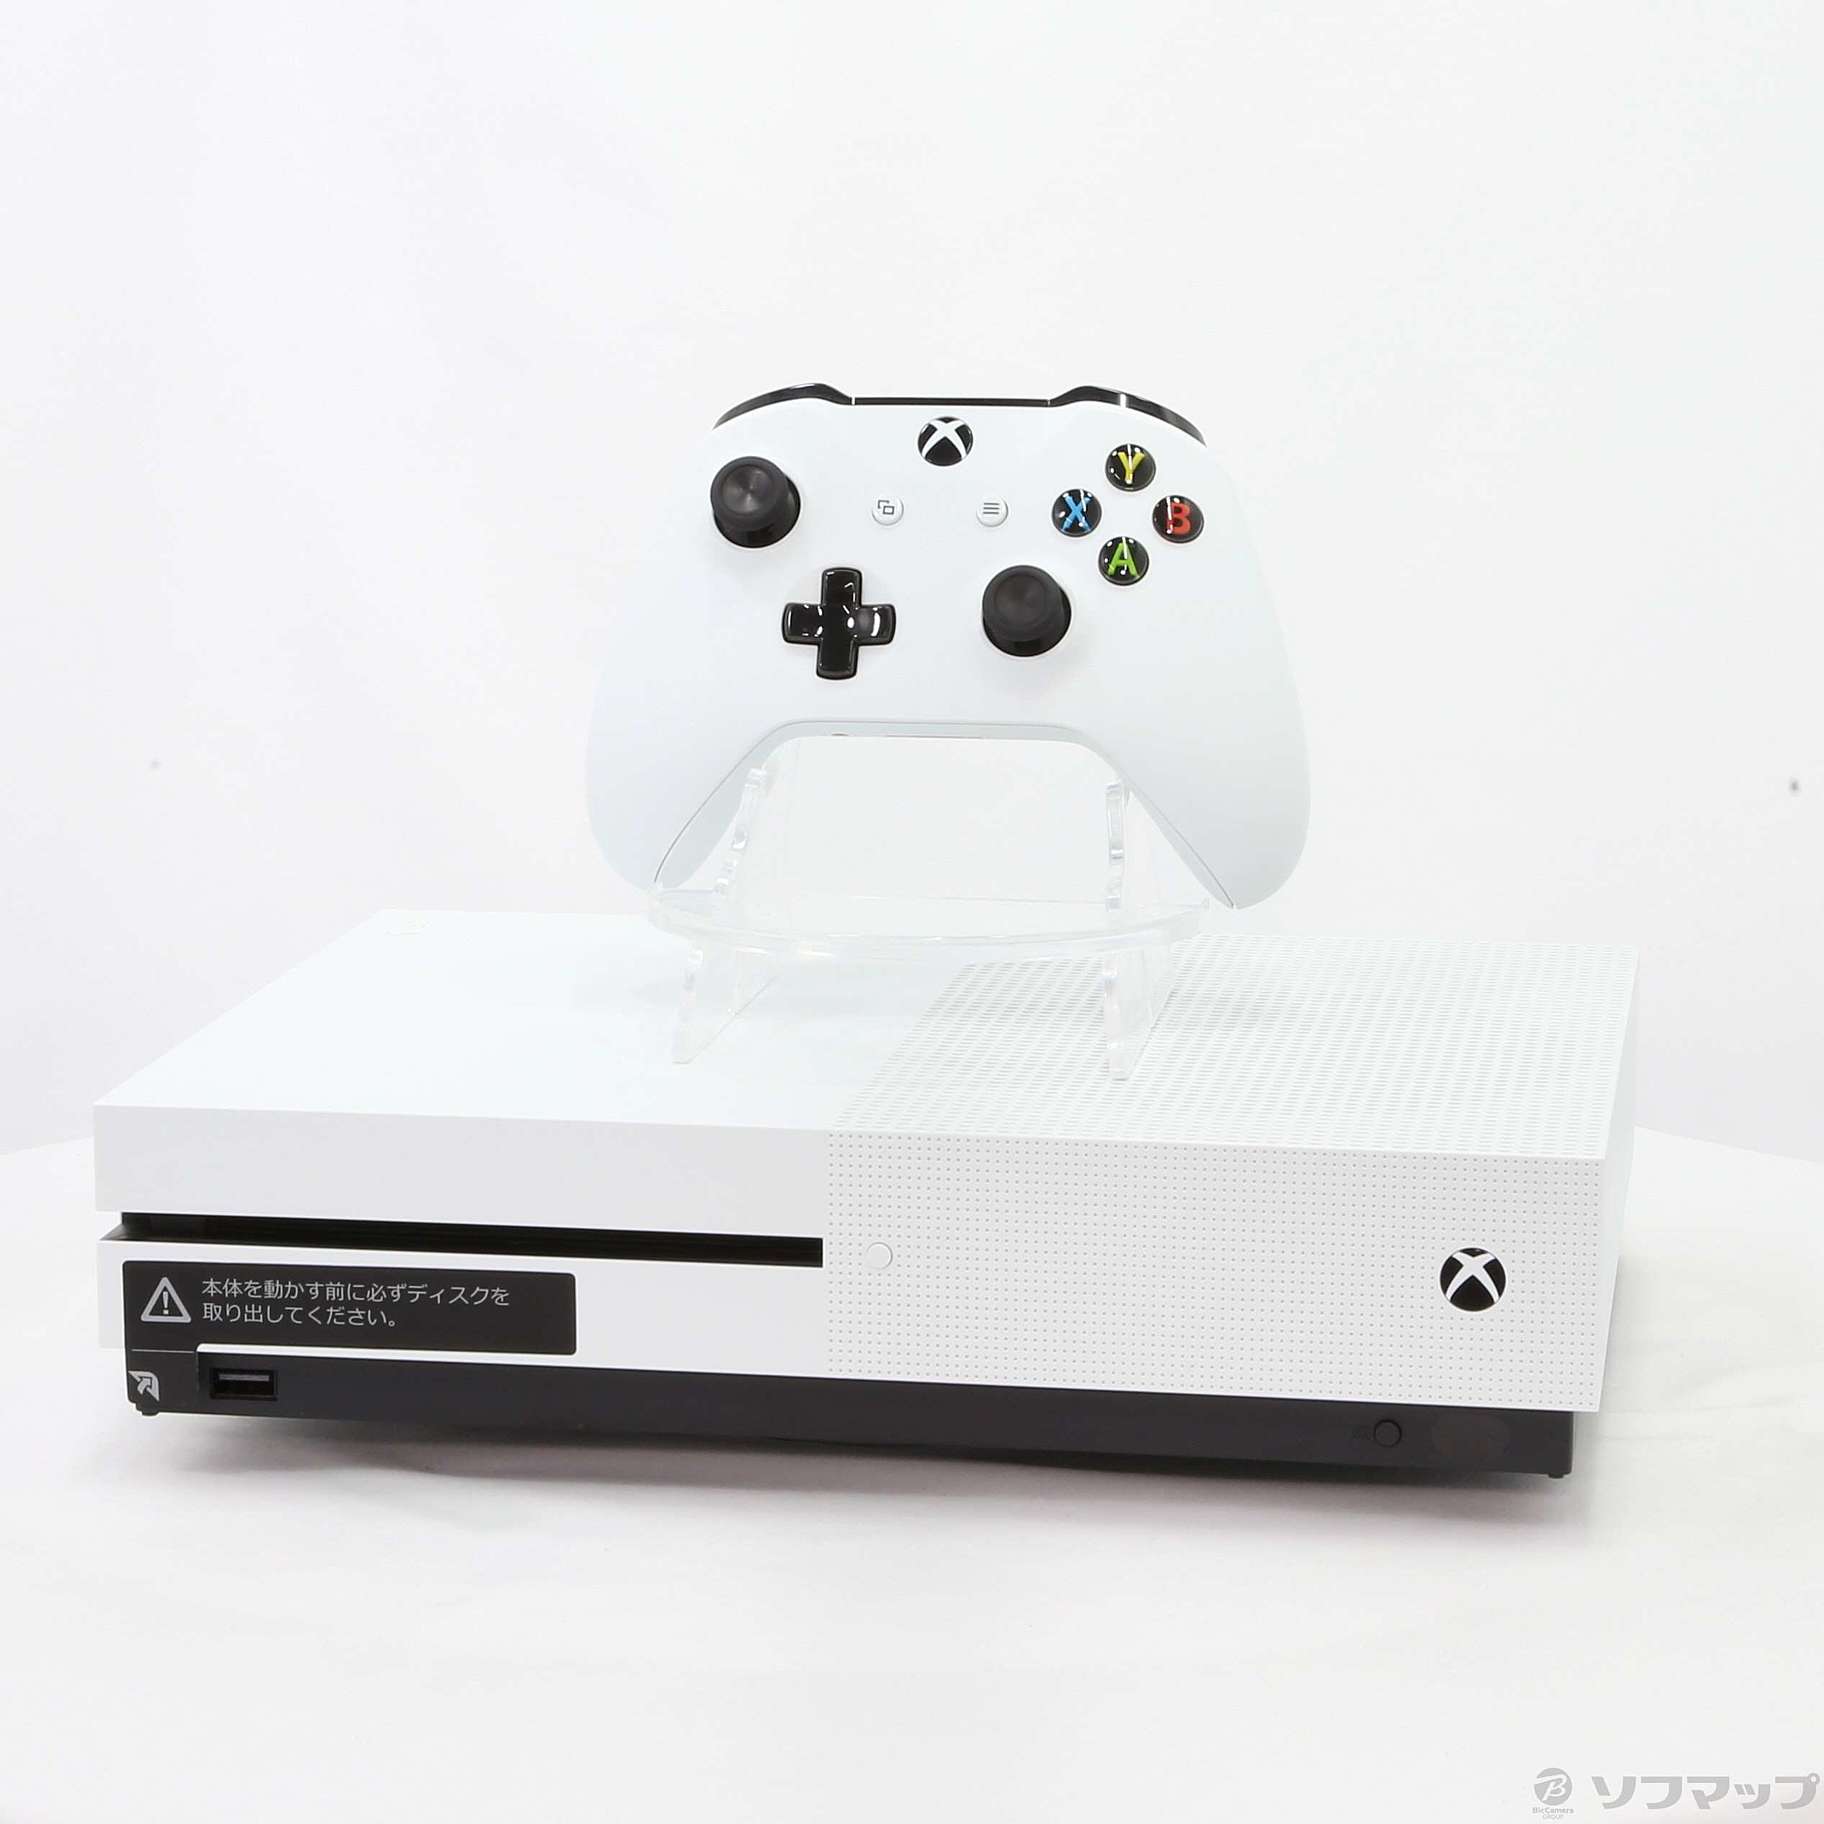 ウォーザード Xbox One S本体とコントローラー 家庭用ゲーム本体